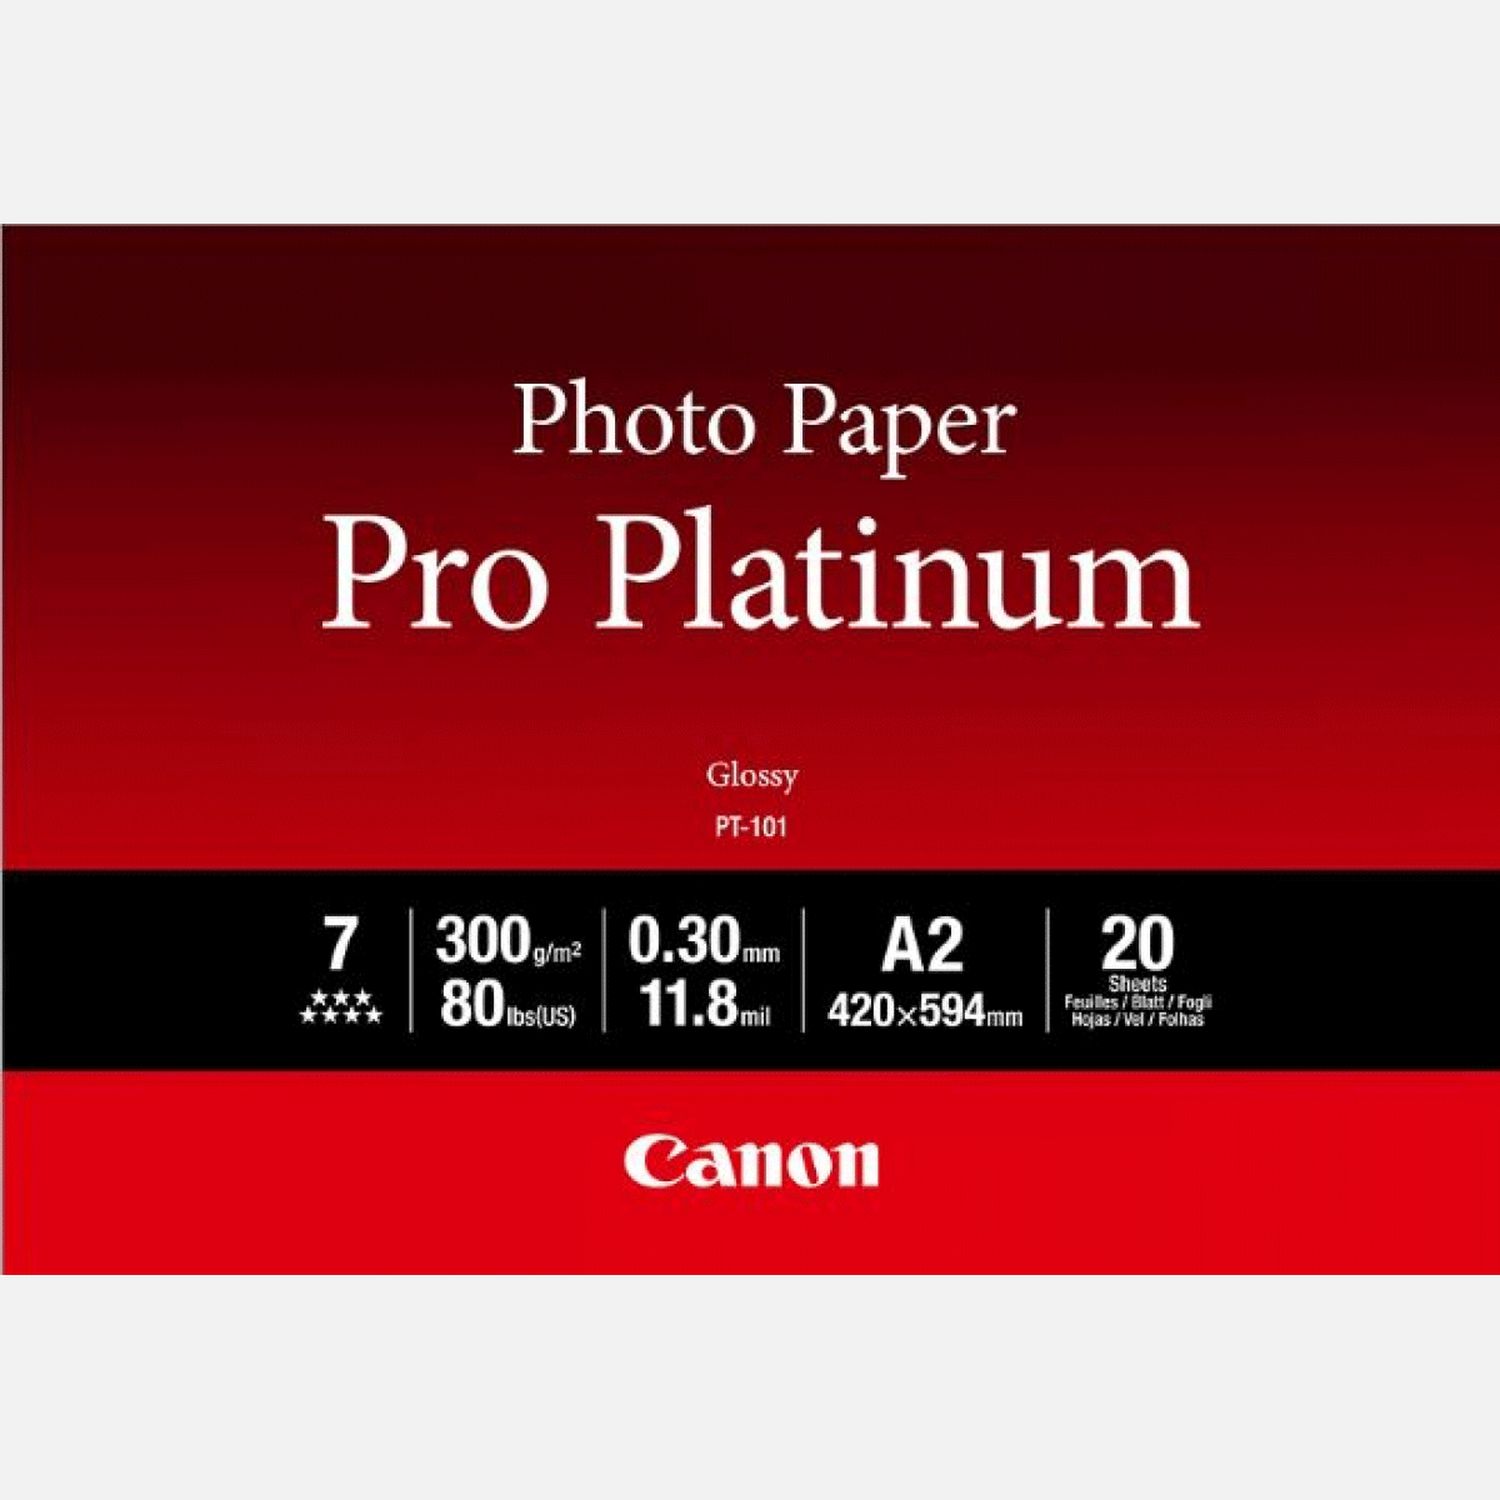 jam Supermarkt Mier Canon PT-101 Pro Platinum Photo Paper A2 - 20 vel in Fotopapier — Canon  Belgie Store